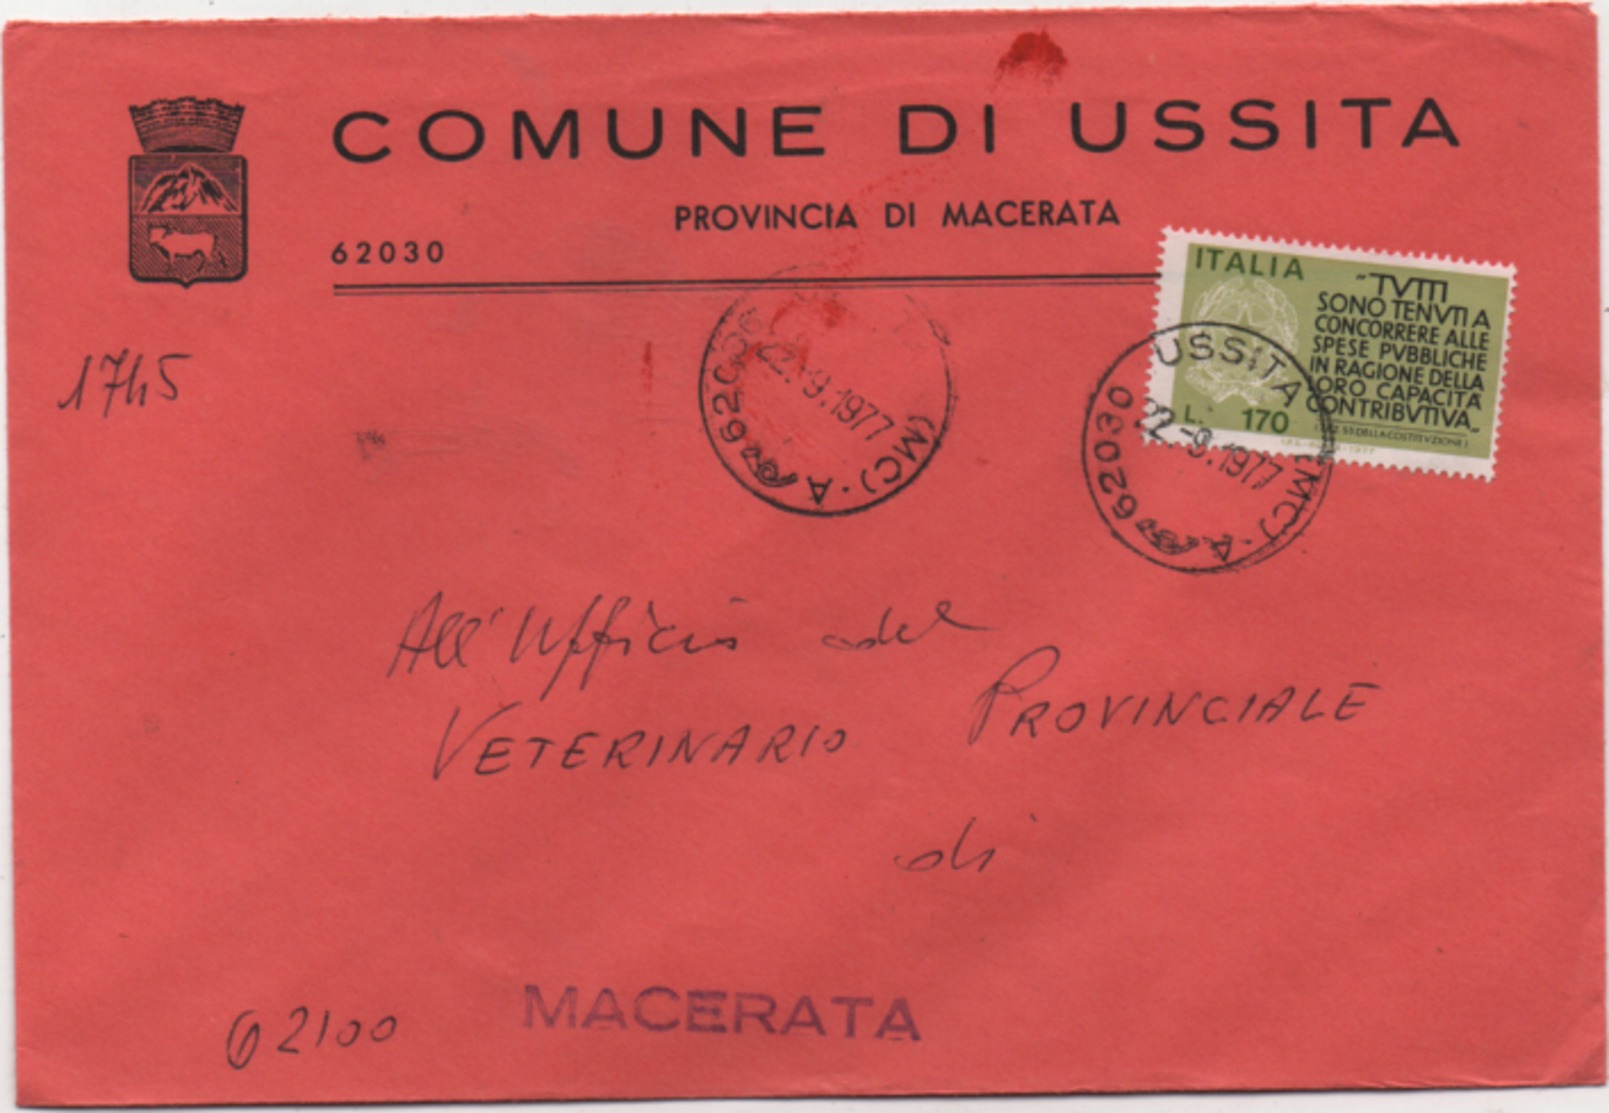 Tematica Comuni D'Italia: Capacità Contributiva £. 170 Su Busta Comune Di Ussita (Macerata) Del 22.09.1977 - 1971-80: Marcofilie